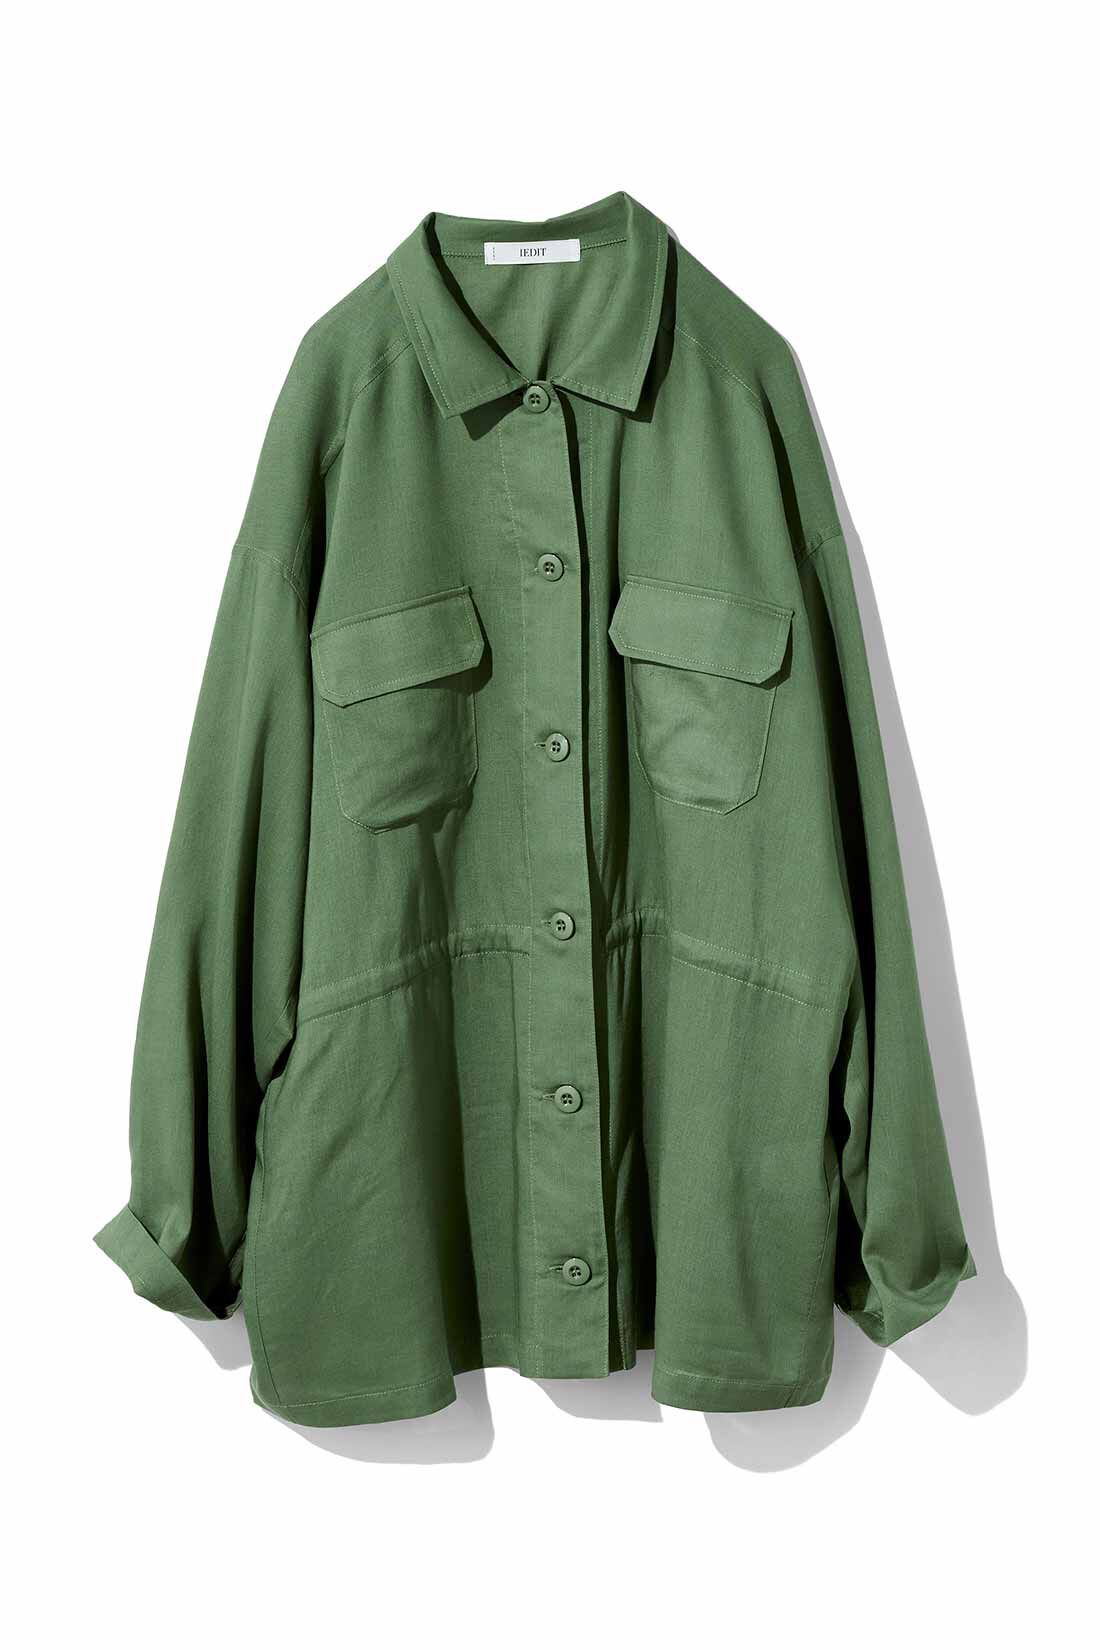 IEDIT[イディット]　リネン混素材のミリタリーシャツジャケット〈カーキグリーン〉|〈カーキグリーン〉